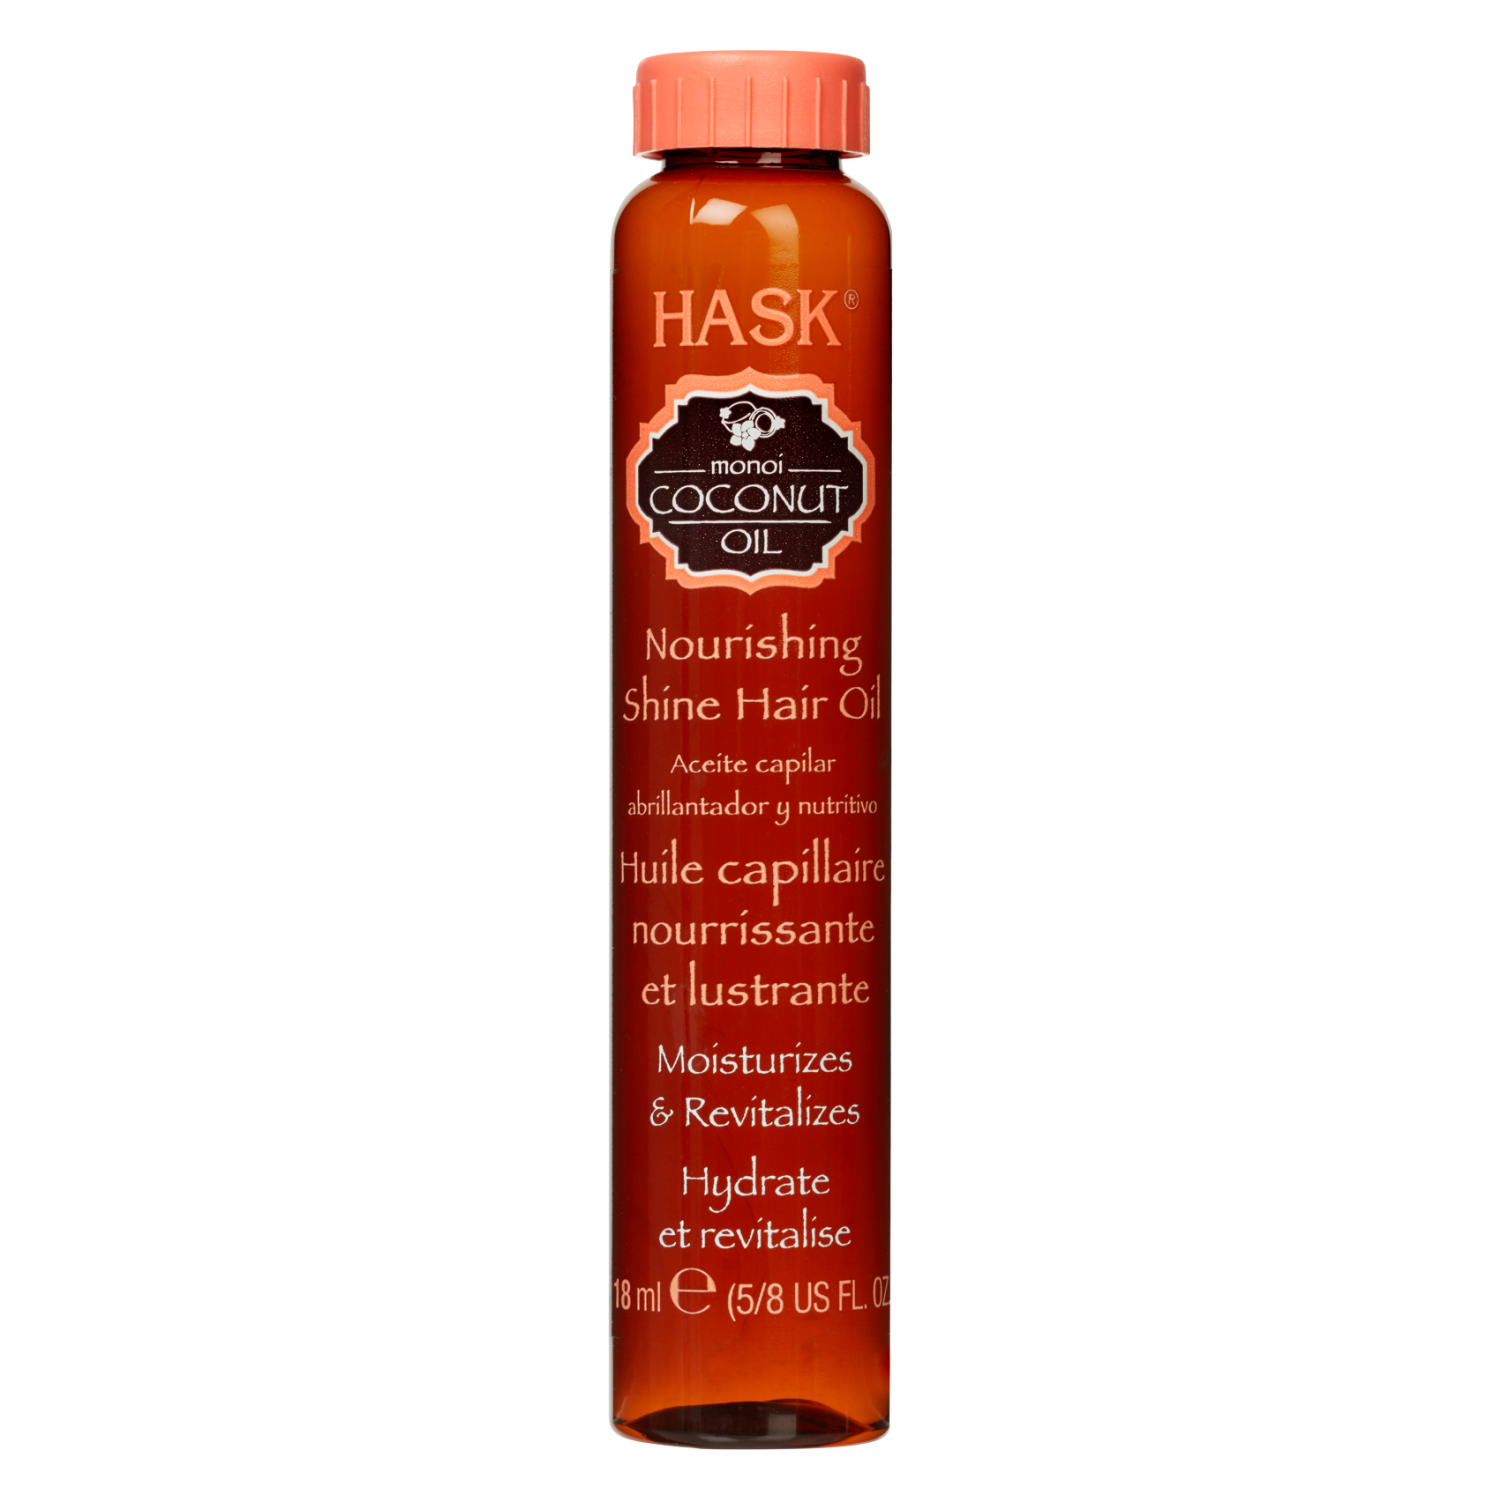 HASK Monoi Coconut Oil Nourishing Hair Oil